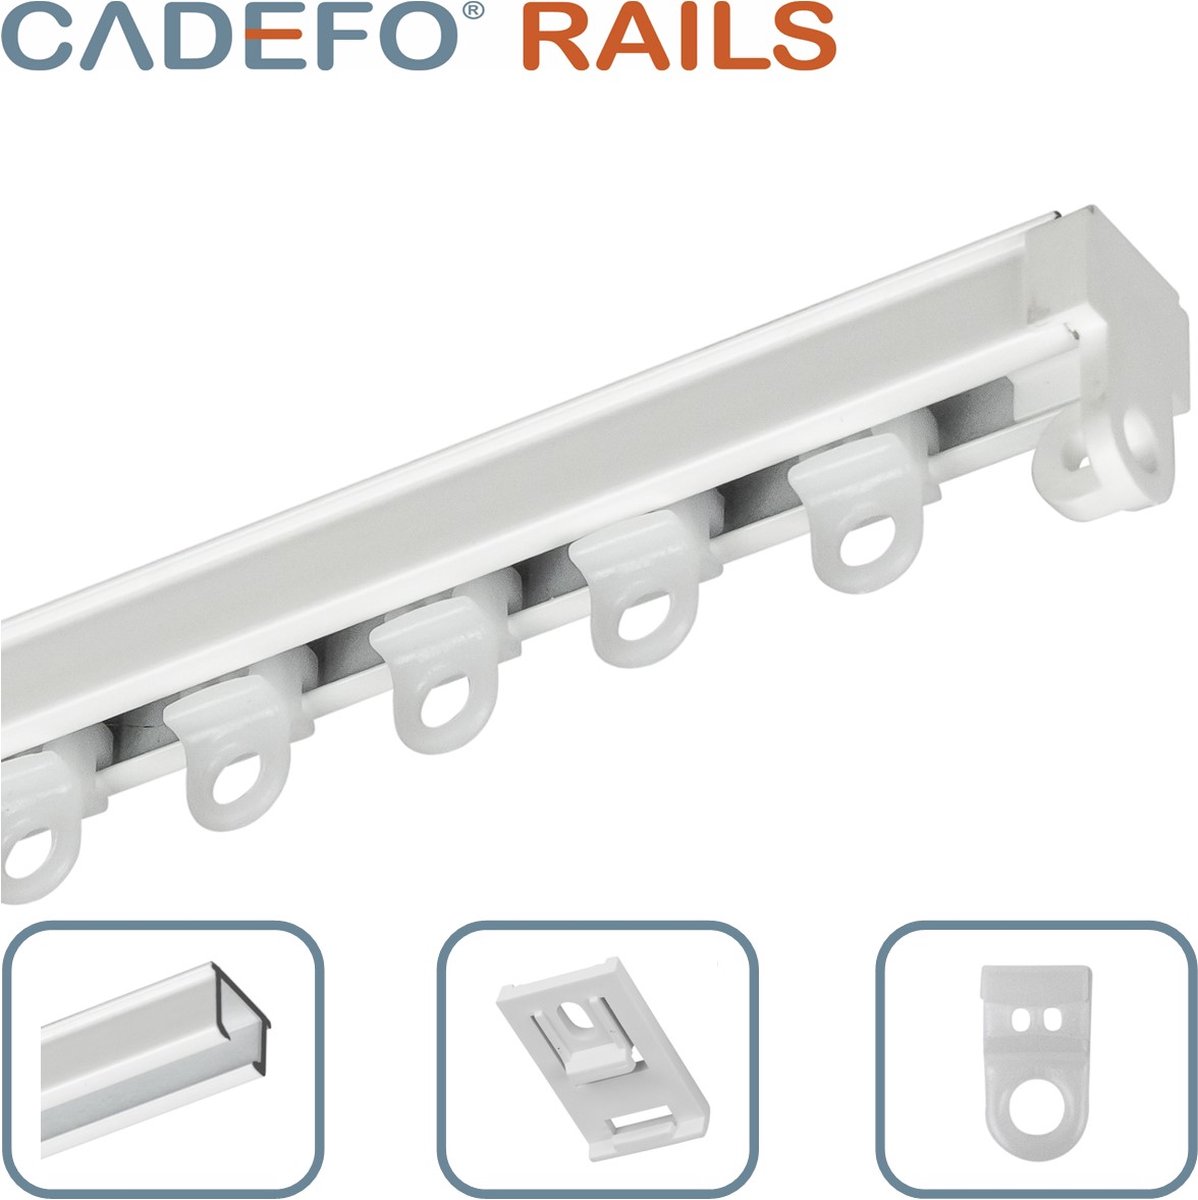 CADEFO RAILS (080 - 100 cm) Gordijnrails - Compleet op maat! - UIT 1 STUK - Leverbaar tot 6 meter - Plafondbevestiging - Lengte 82 cm